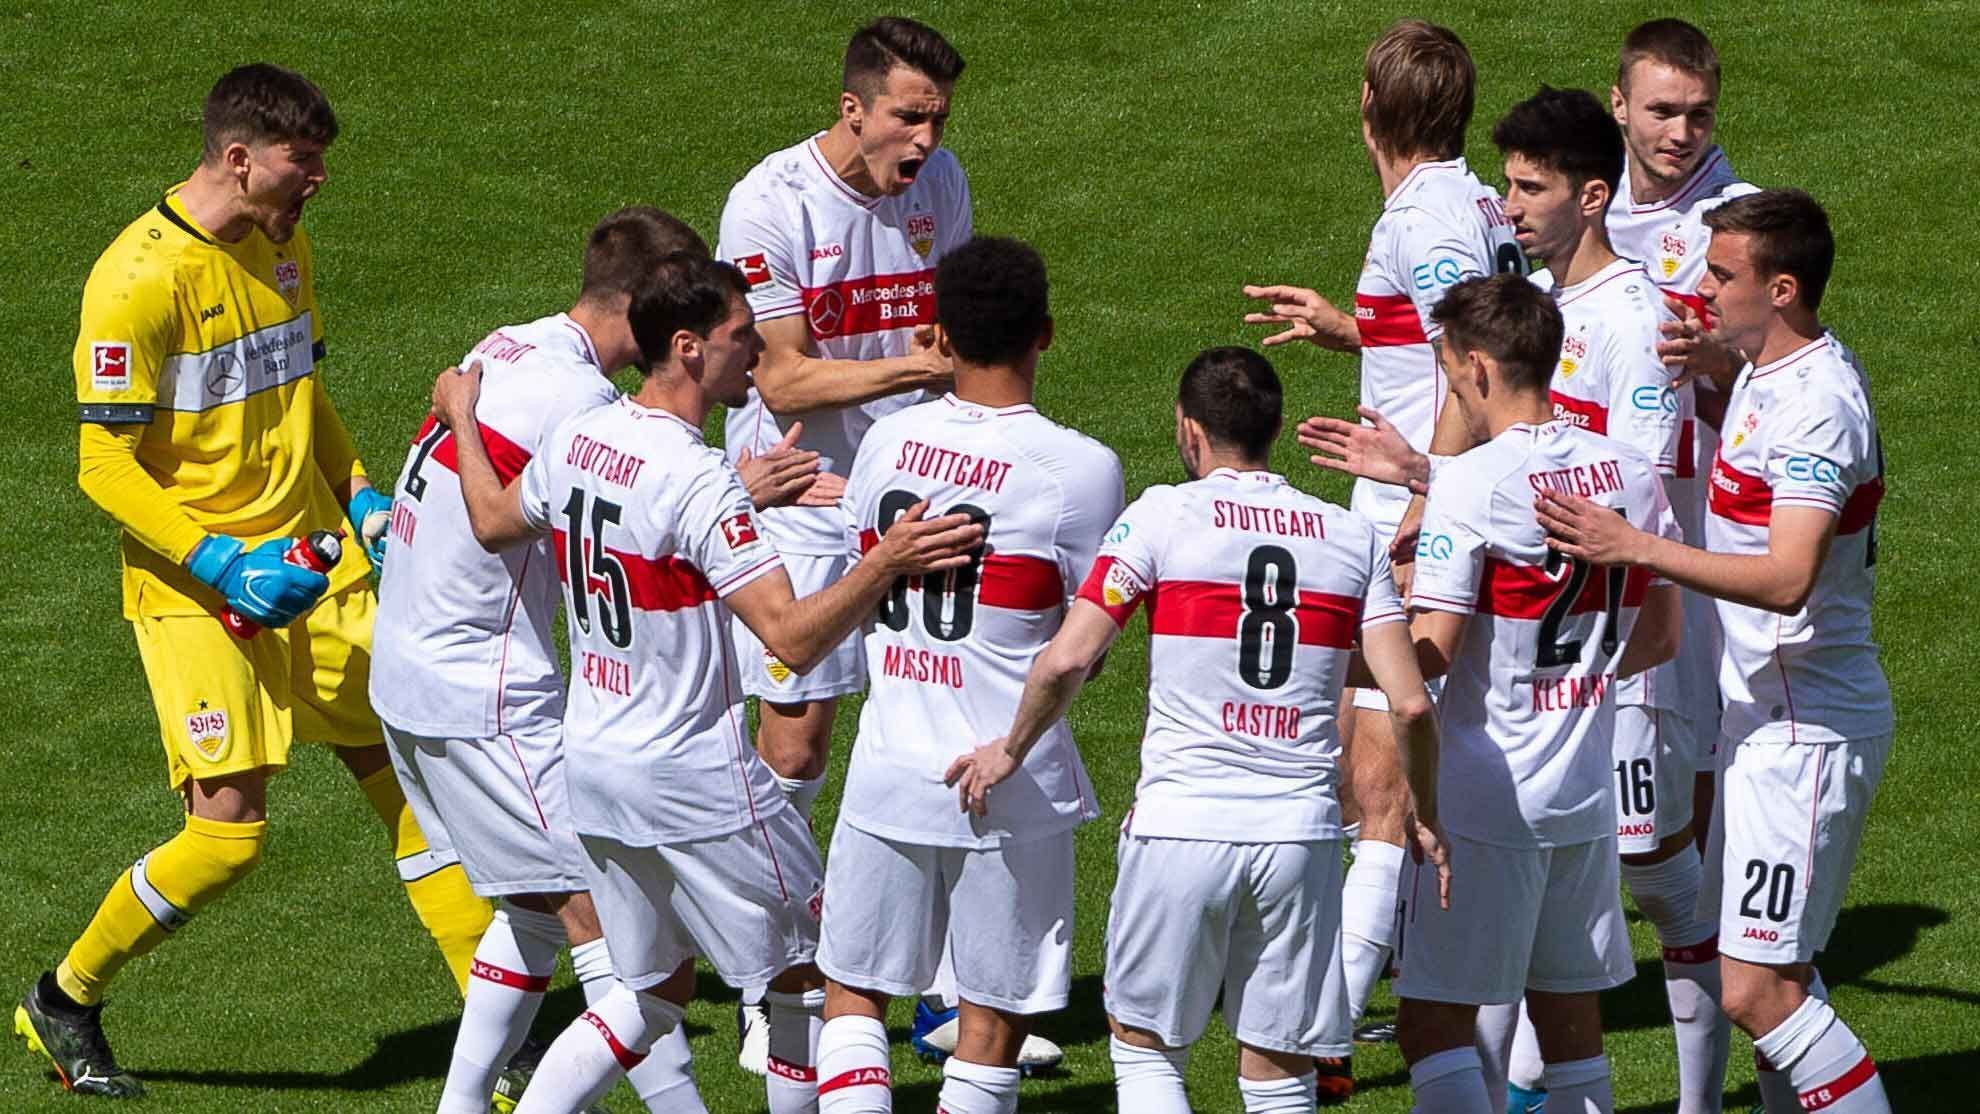 
                <strong>Platz 10: VfB Stuttgart (6,67 Millionen Euro)</strong><br>
                Der VfB Stuttgart reiht sich davor ein. Die Schwaben haben laut Bericht der DFL - wohlgemerkt noch als Zweitligist - rund 6,67 Millionen Euro an Berater auszahlen müssen. 
              